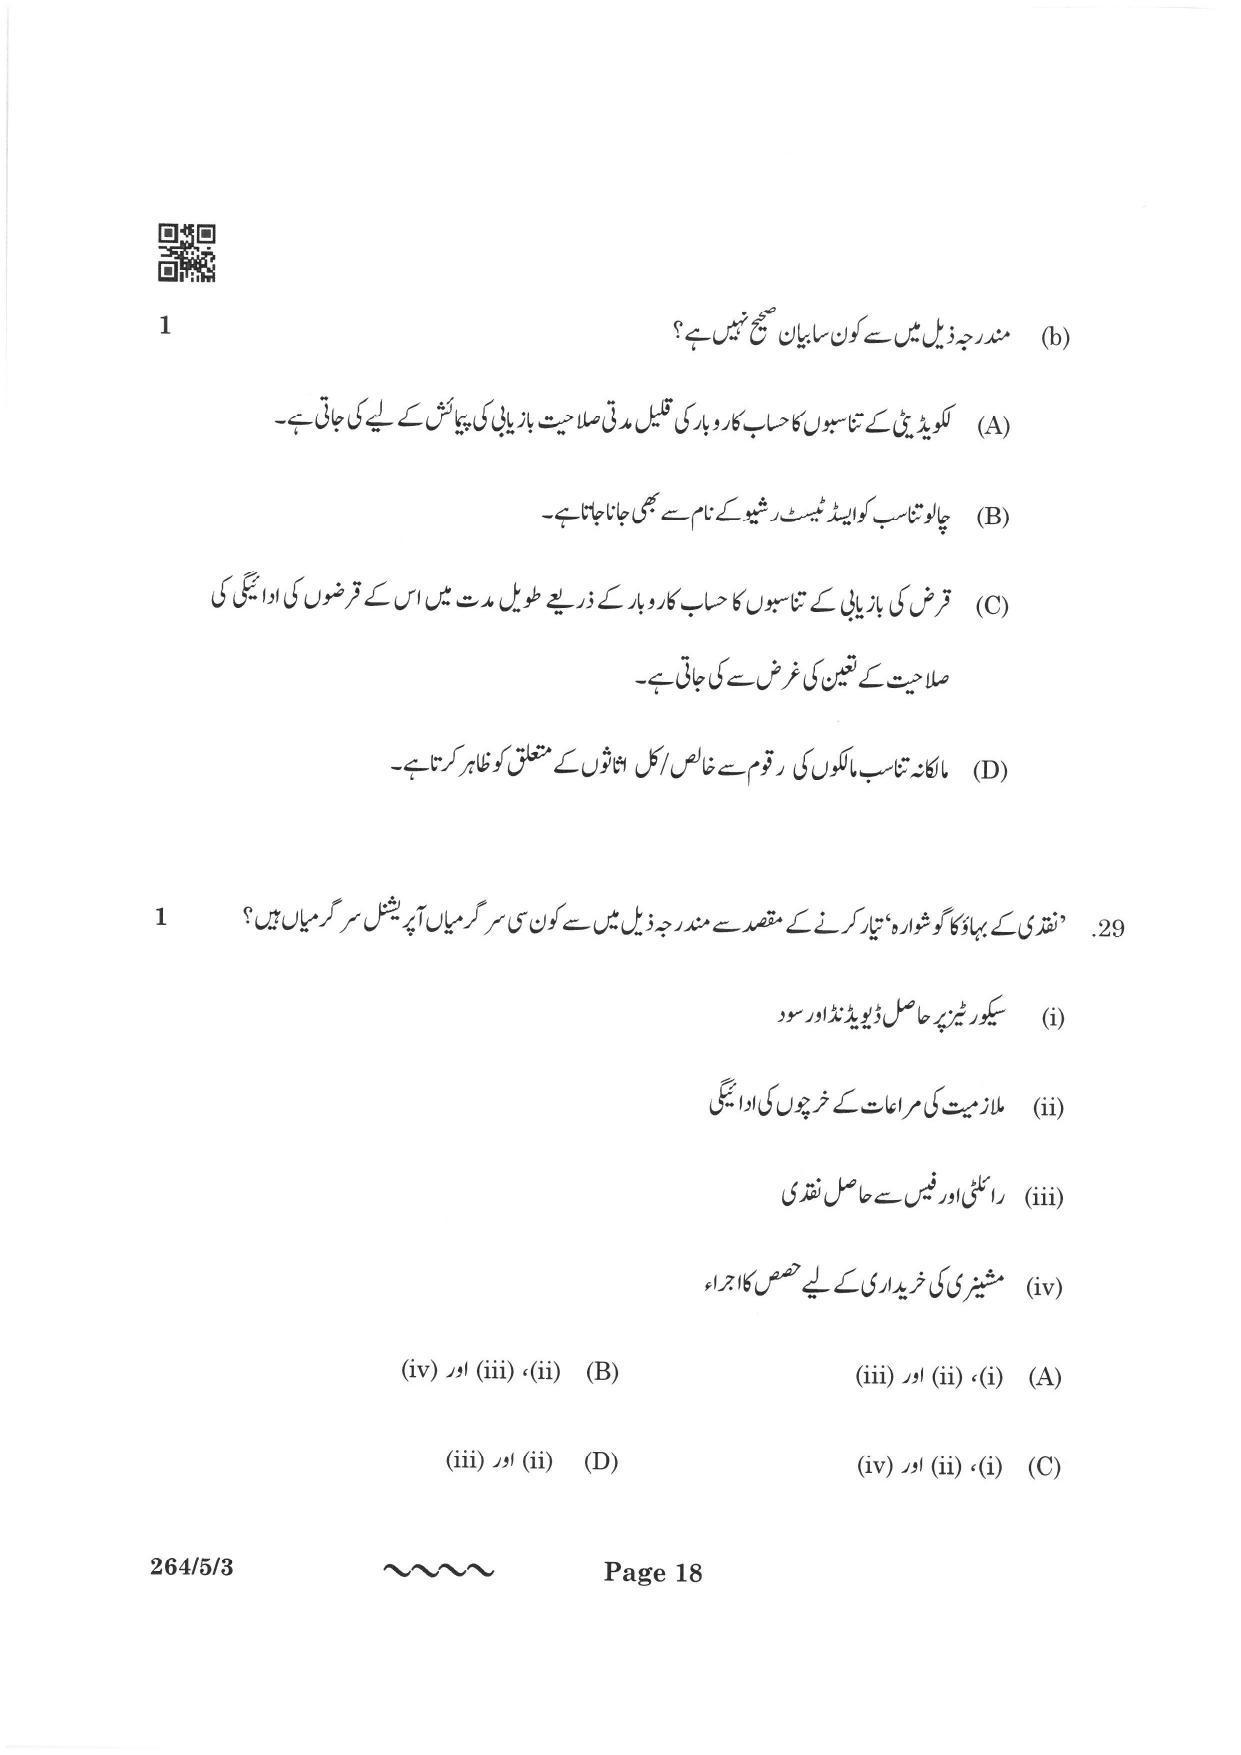 CBSE Class 12 264-5-3 Accountancy Urdu Version 2023 Question Paper - Page 18